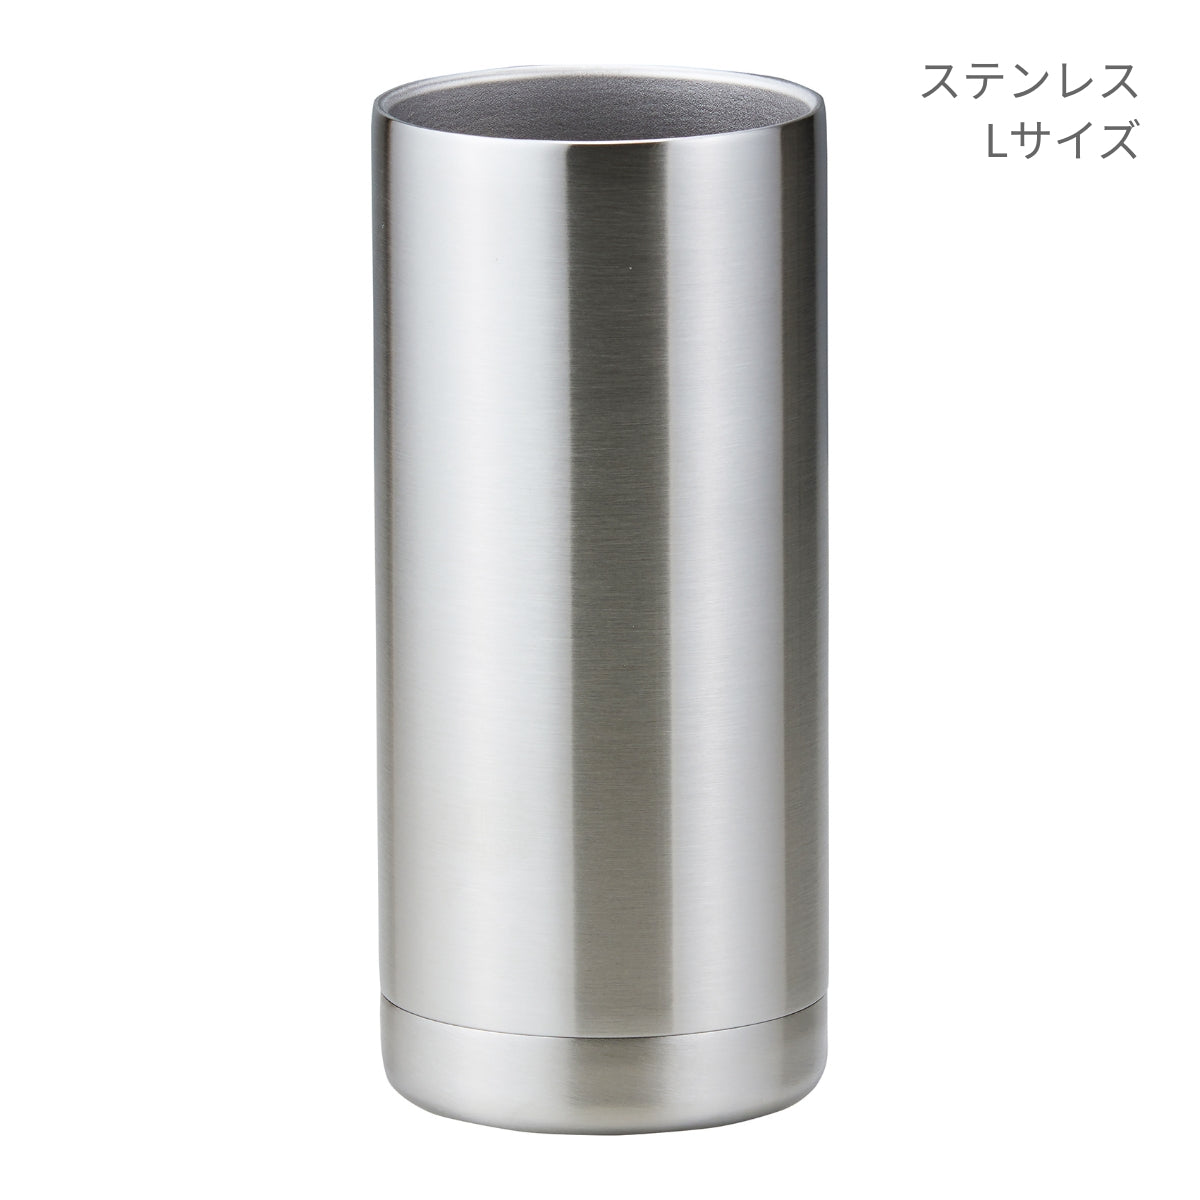 真空ステンレス 缶クーラー | ノベルティ(小物) | 1枚 | 3000-01 | ネイビー